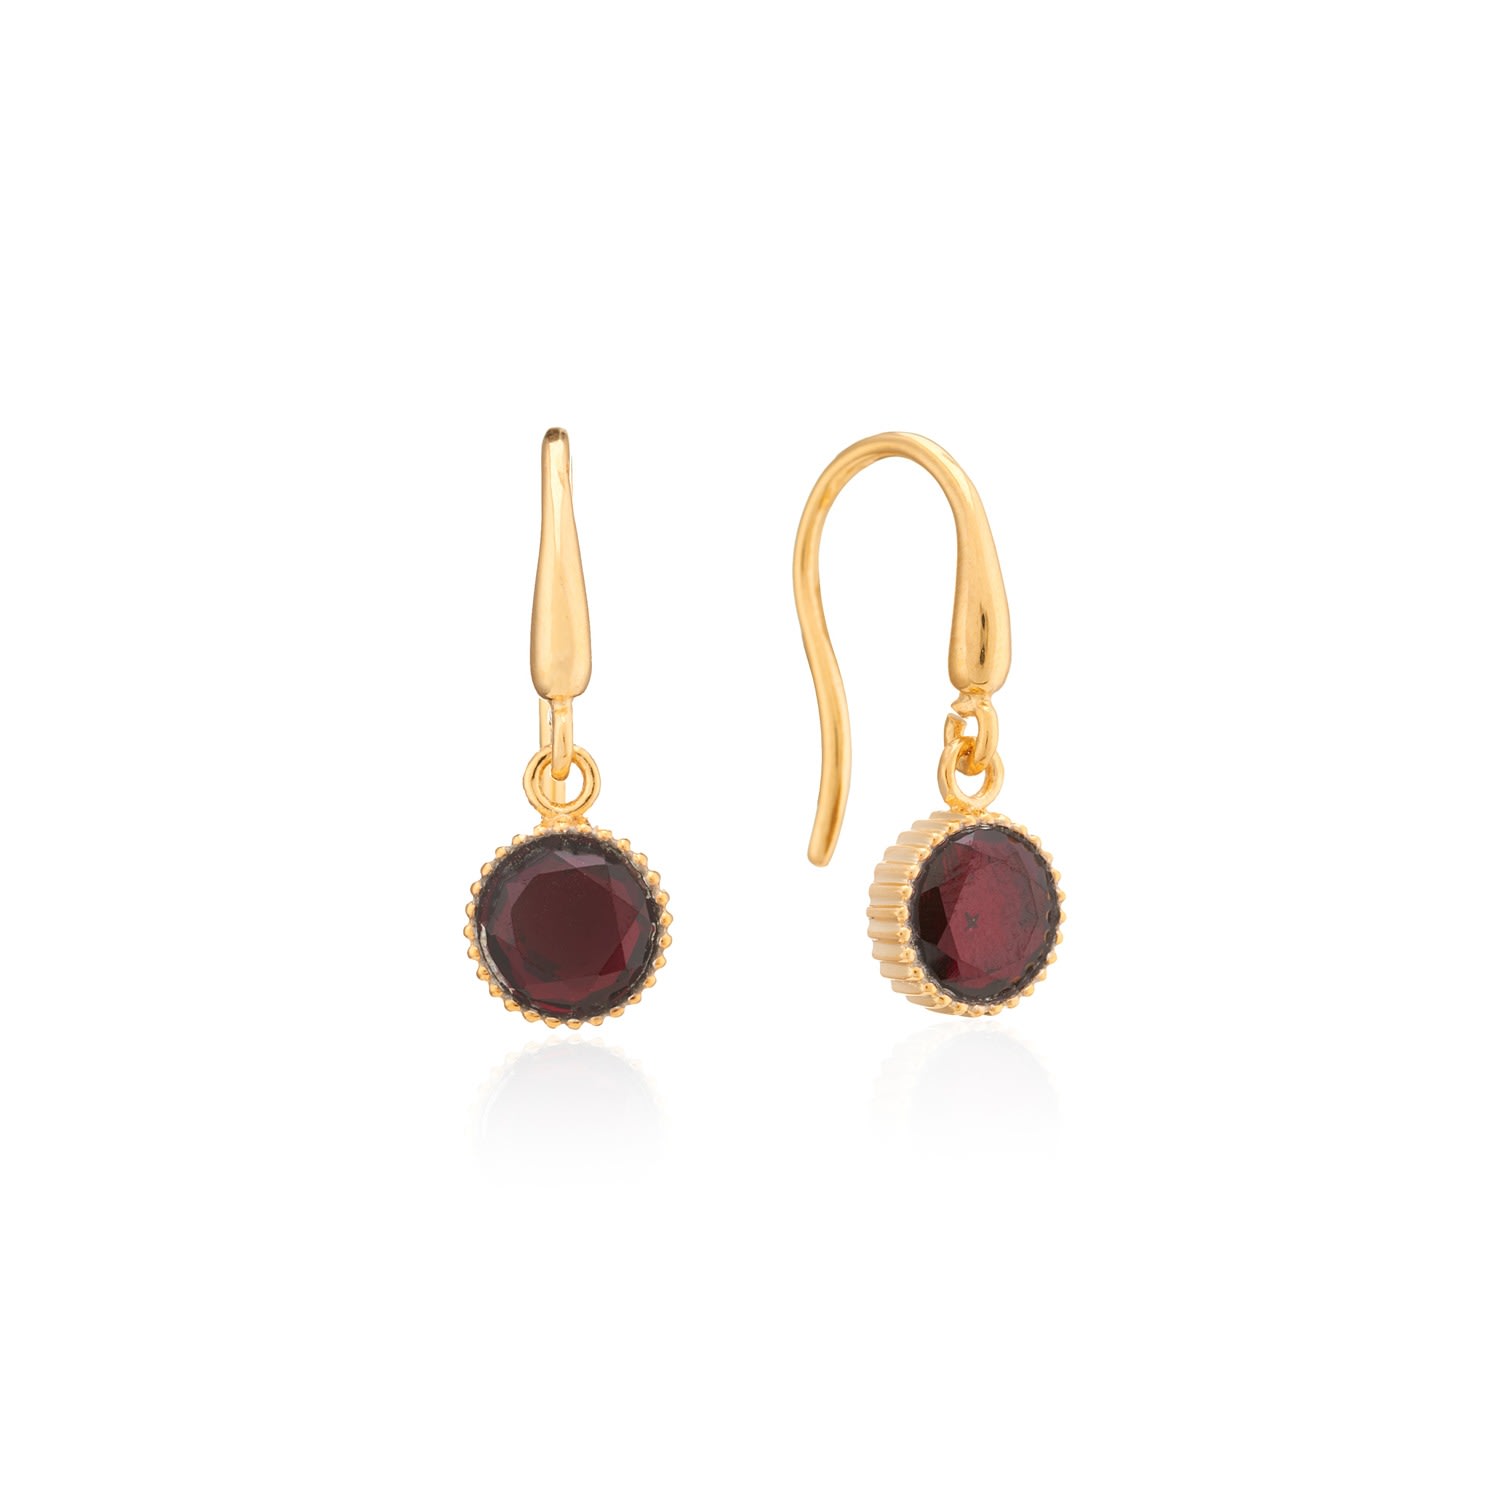 Auree Jewellery Women's Red / Gold Barcelona January Birthstone Hook Earrings Garnet